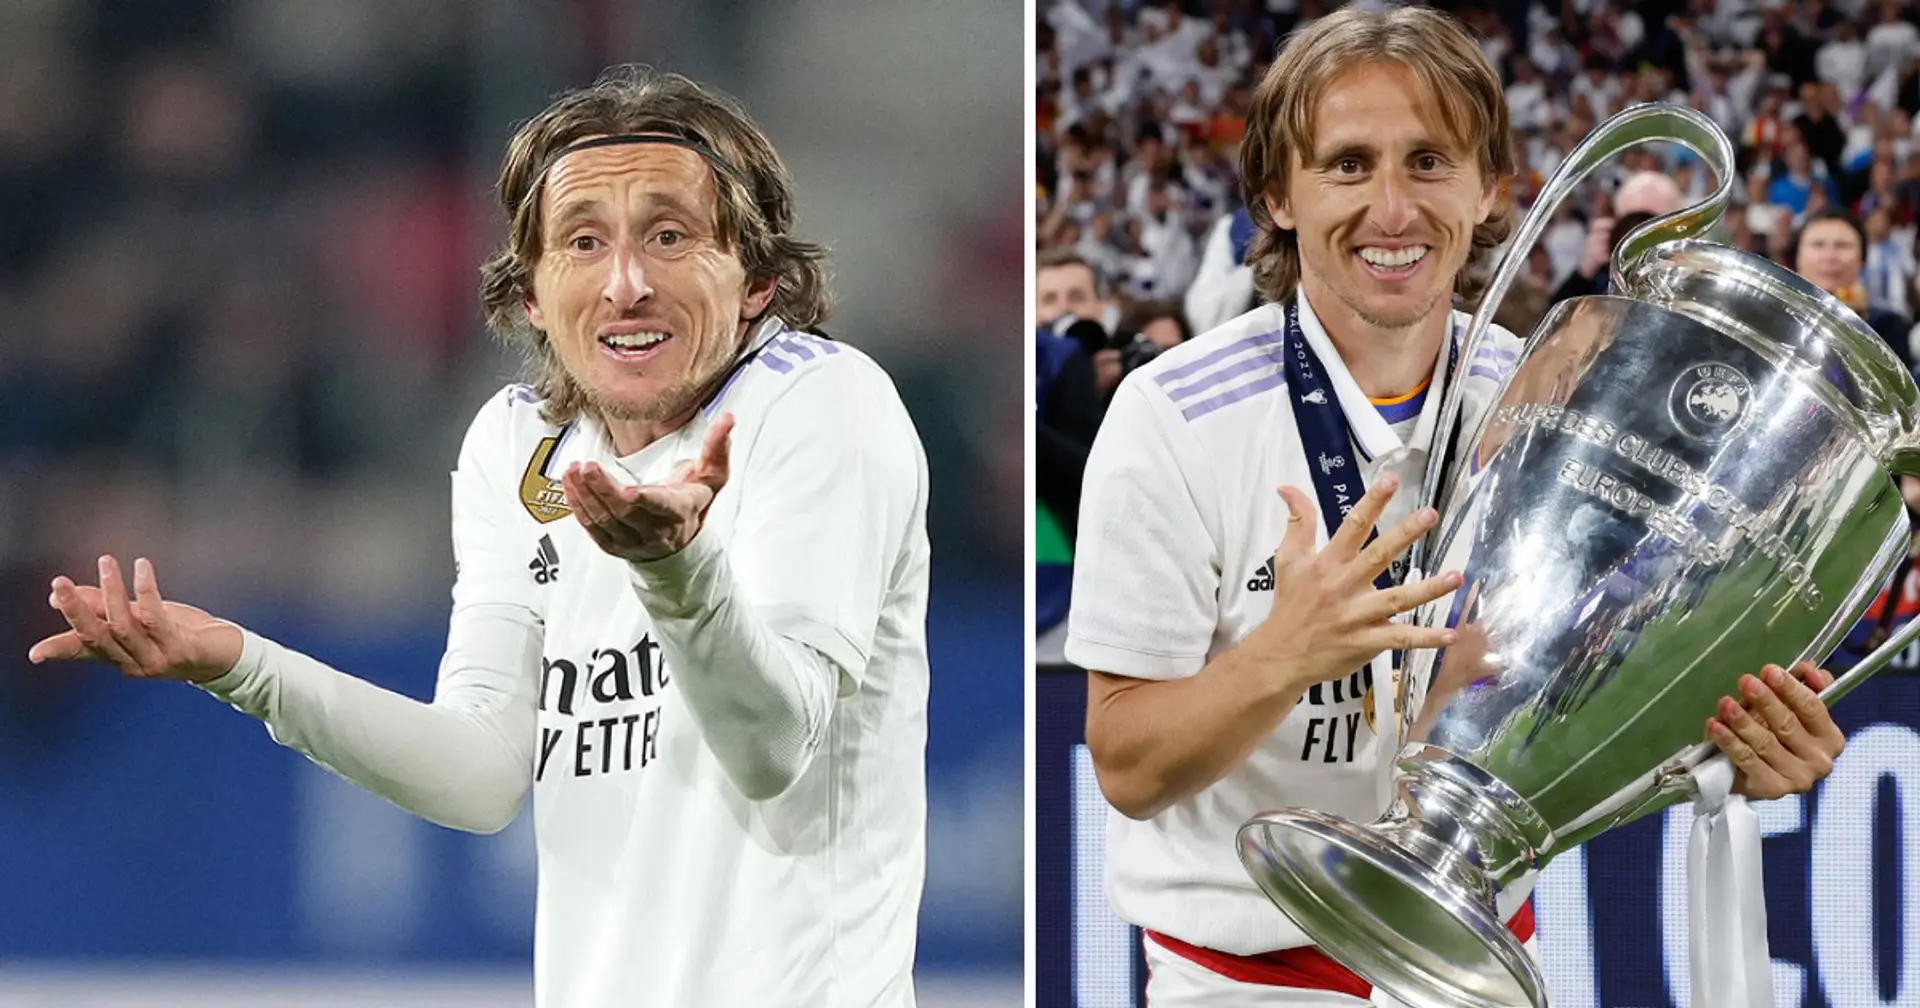 Modric blieb zum ersten Mal seit 11 Jahren in 2 aufeinanderfolgenden Spielen ohne Verletzung oder Sperre auf der Bank von Real Madrid